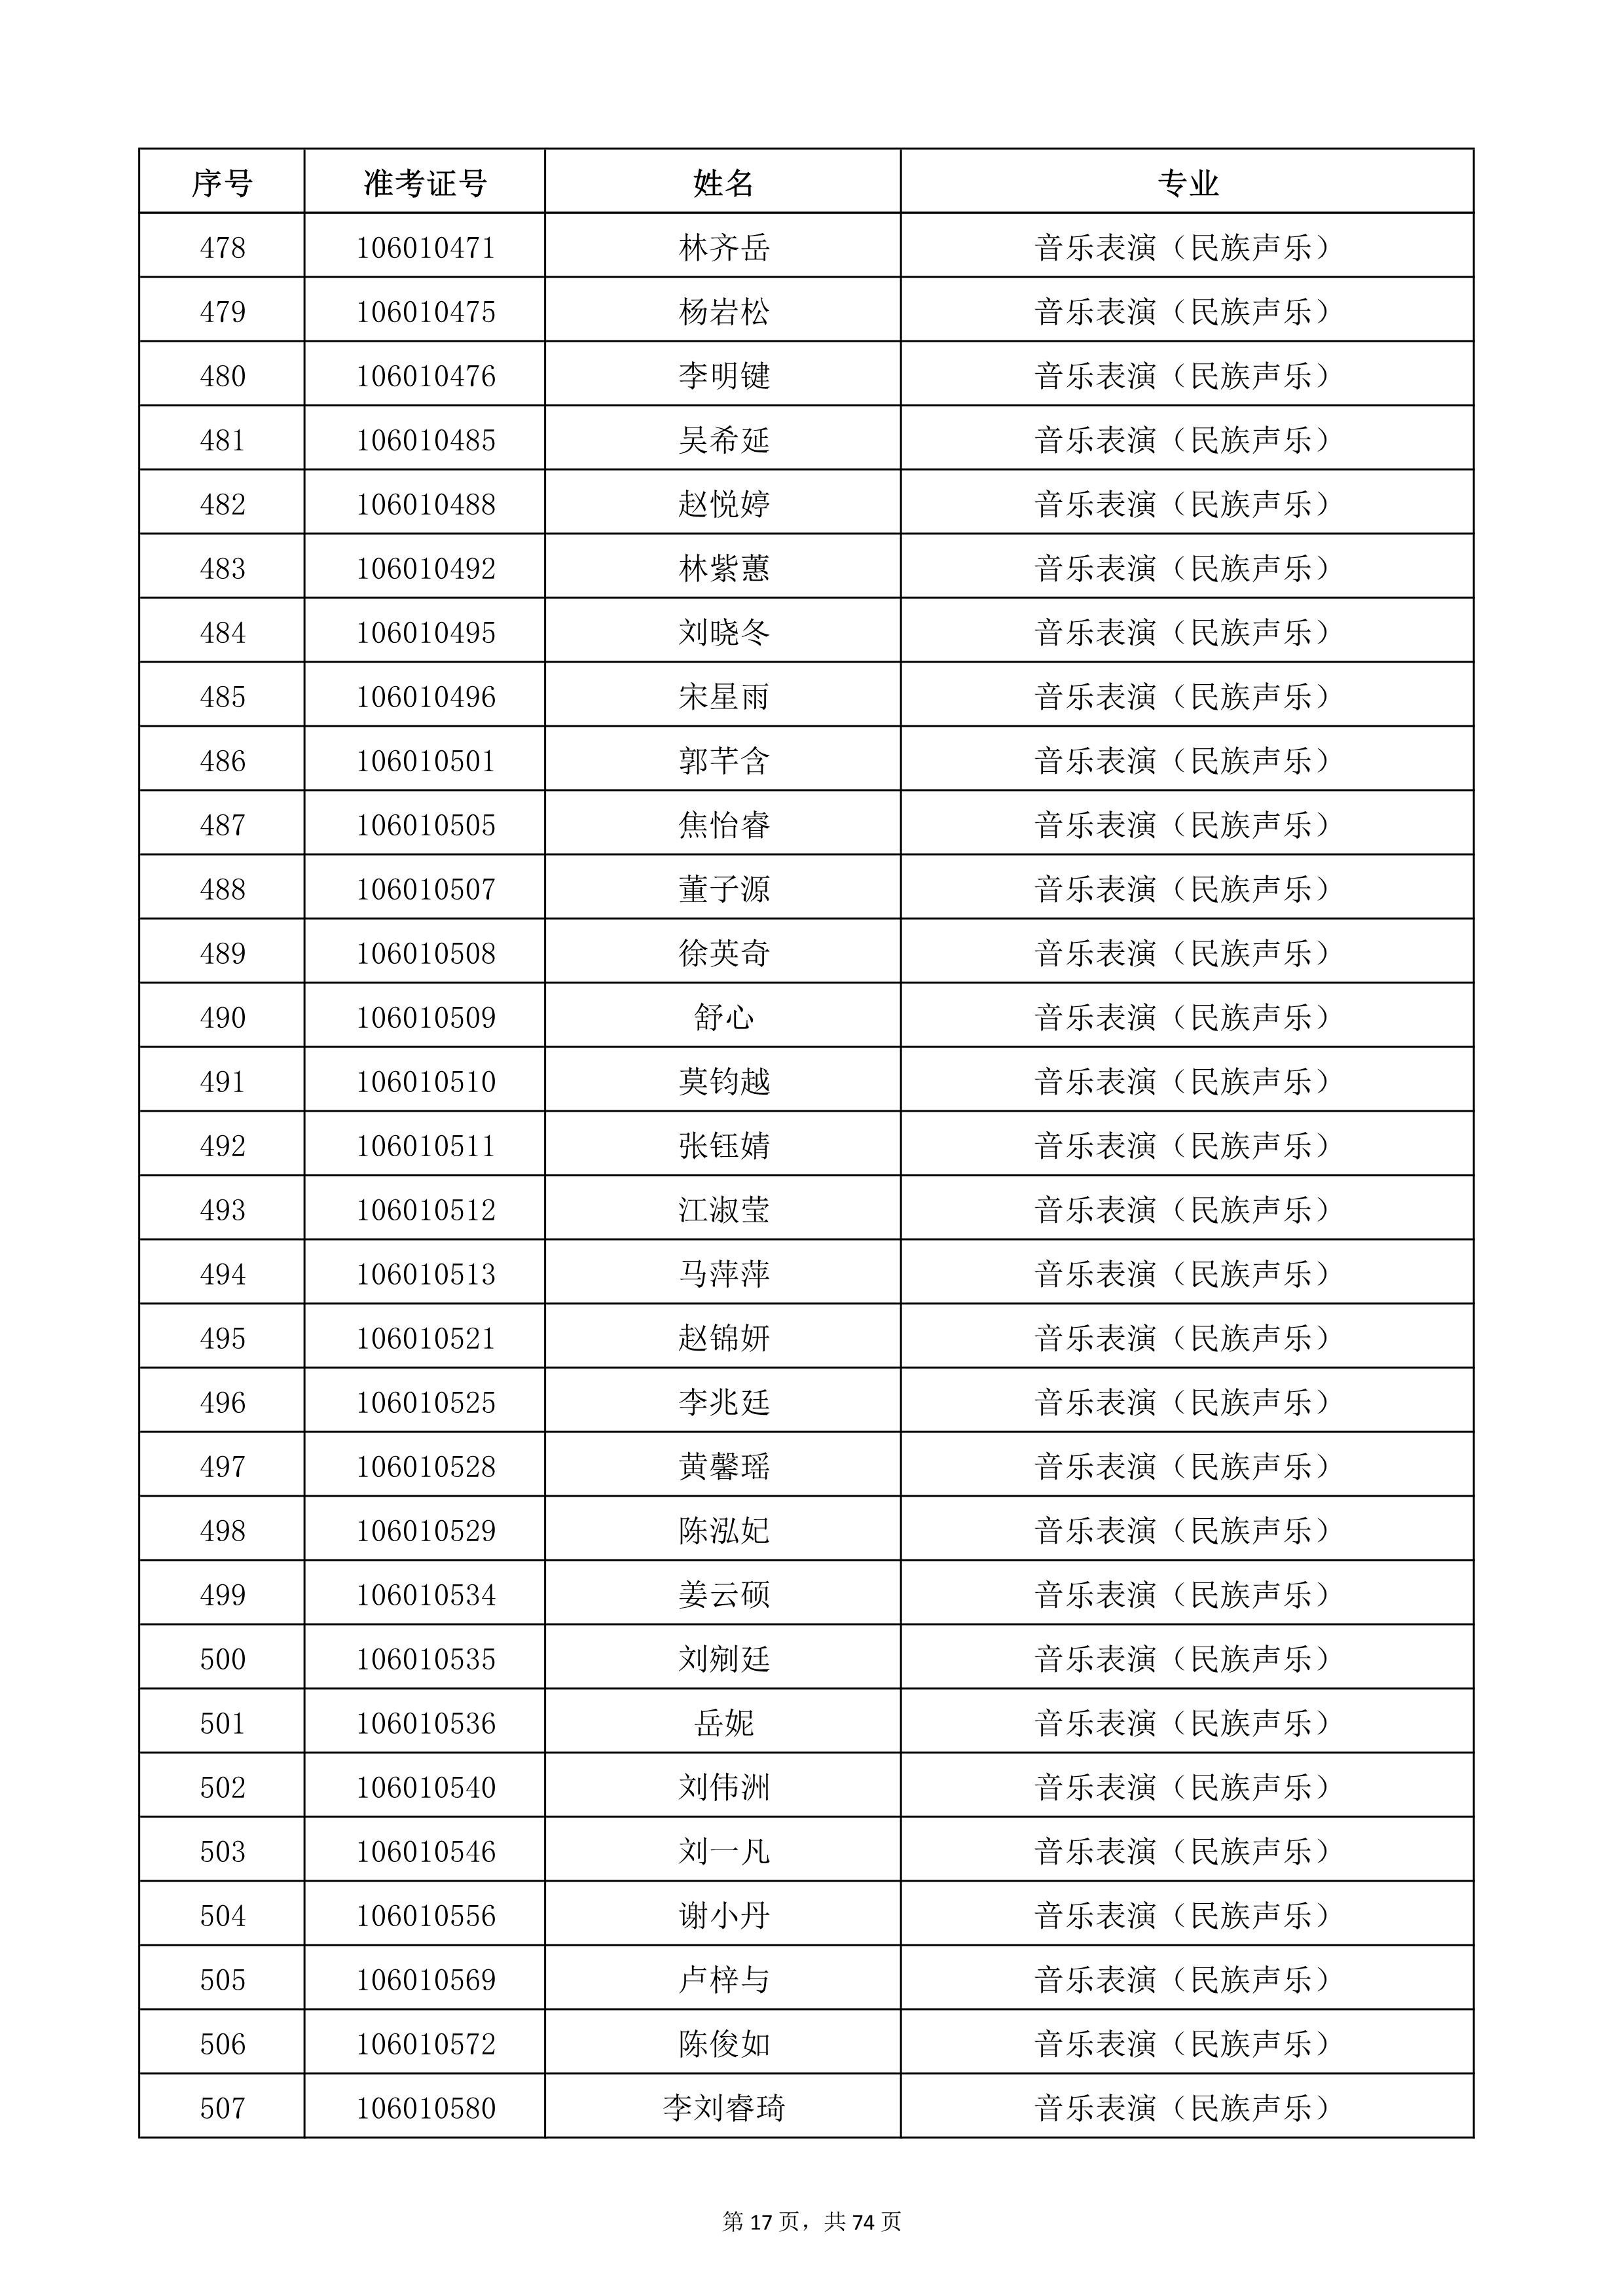 天津音乐学院2022年本科招生考试复试名单_17.jpg